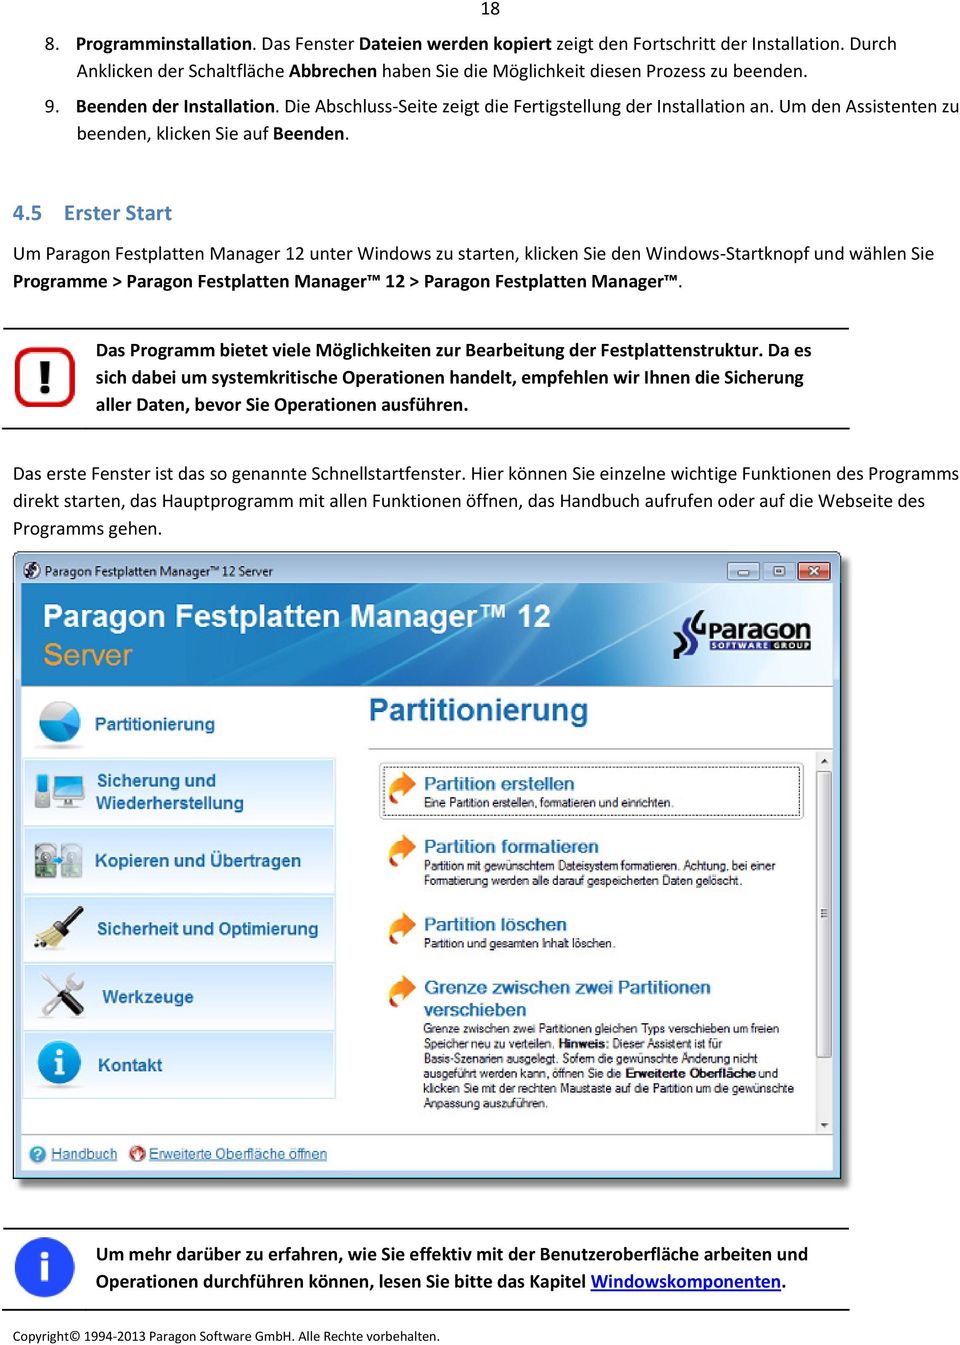 5 Erster Start Um Paragon Festplatten Manager 12 unter Windows zu starten, klicken Sie den Windows Startknopf und wählen Sie Programme > Paragon Festplatten Manager 12 > Paragon Festplatten Manager.